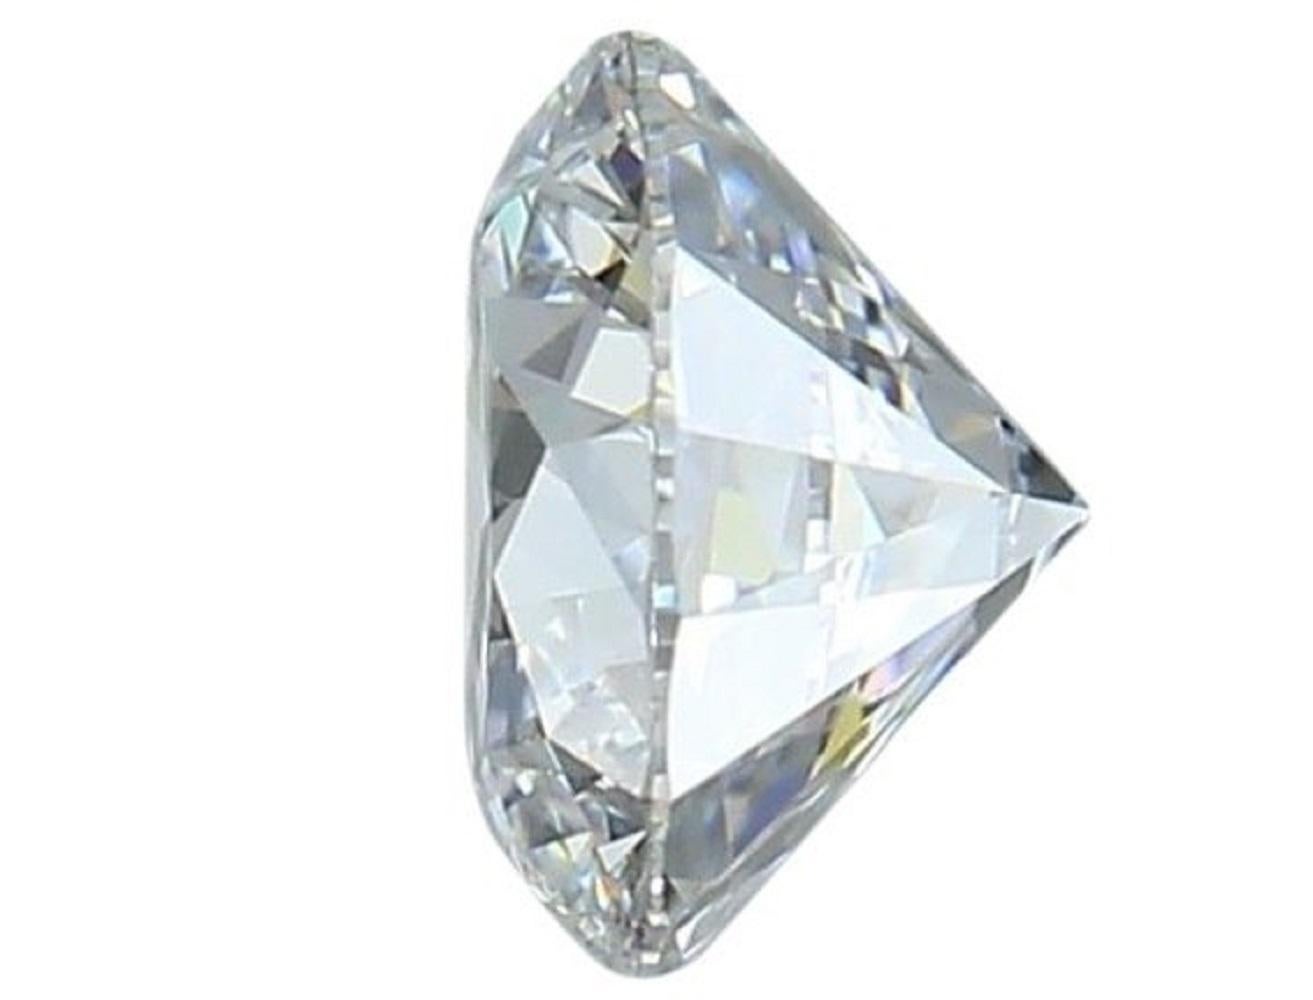 1 diamant brillant rond naturel étincelant de 2,34 carats E VVS2 avec une excellente taille. Ce diamant est accompagné d'un certificat IGI et d'un numéro d'inscription au laser.

SKU : 172553
IGI 553249159